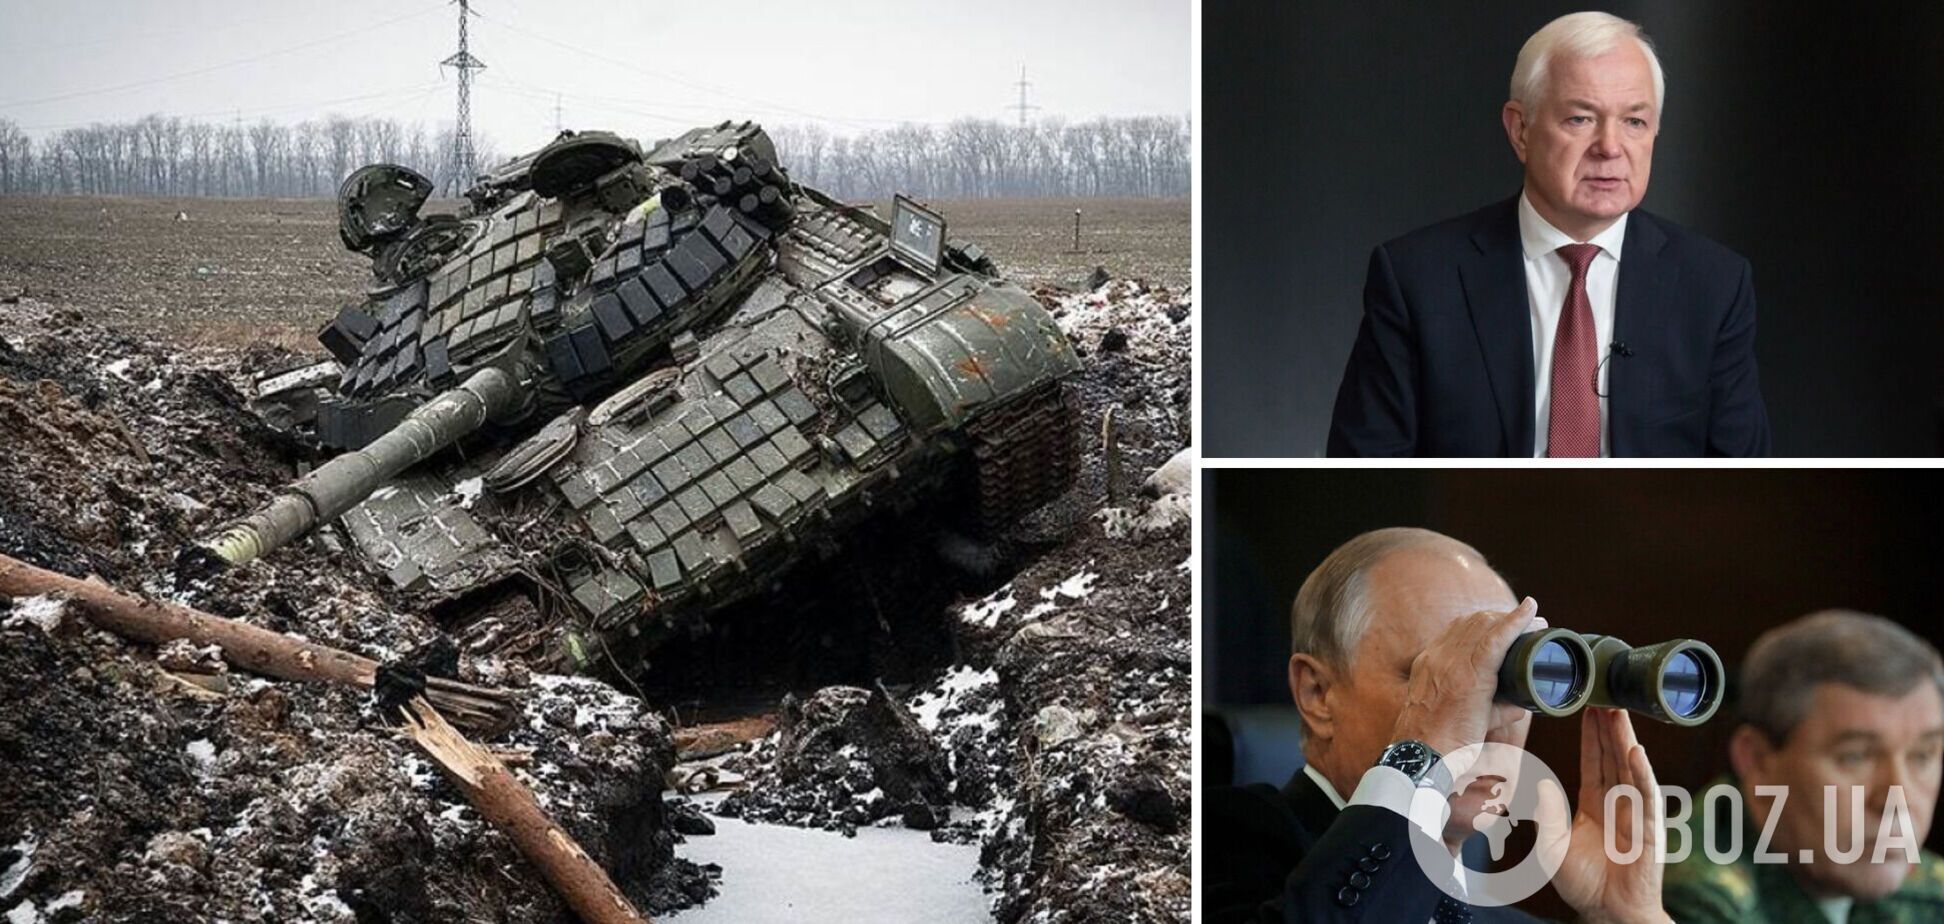 Генерал Маломуж: Путин готовит новый 'жест доброй воли', костяк его армии уничтожен на 75%. Интервью